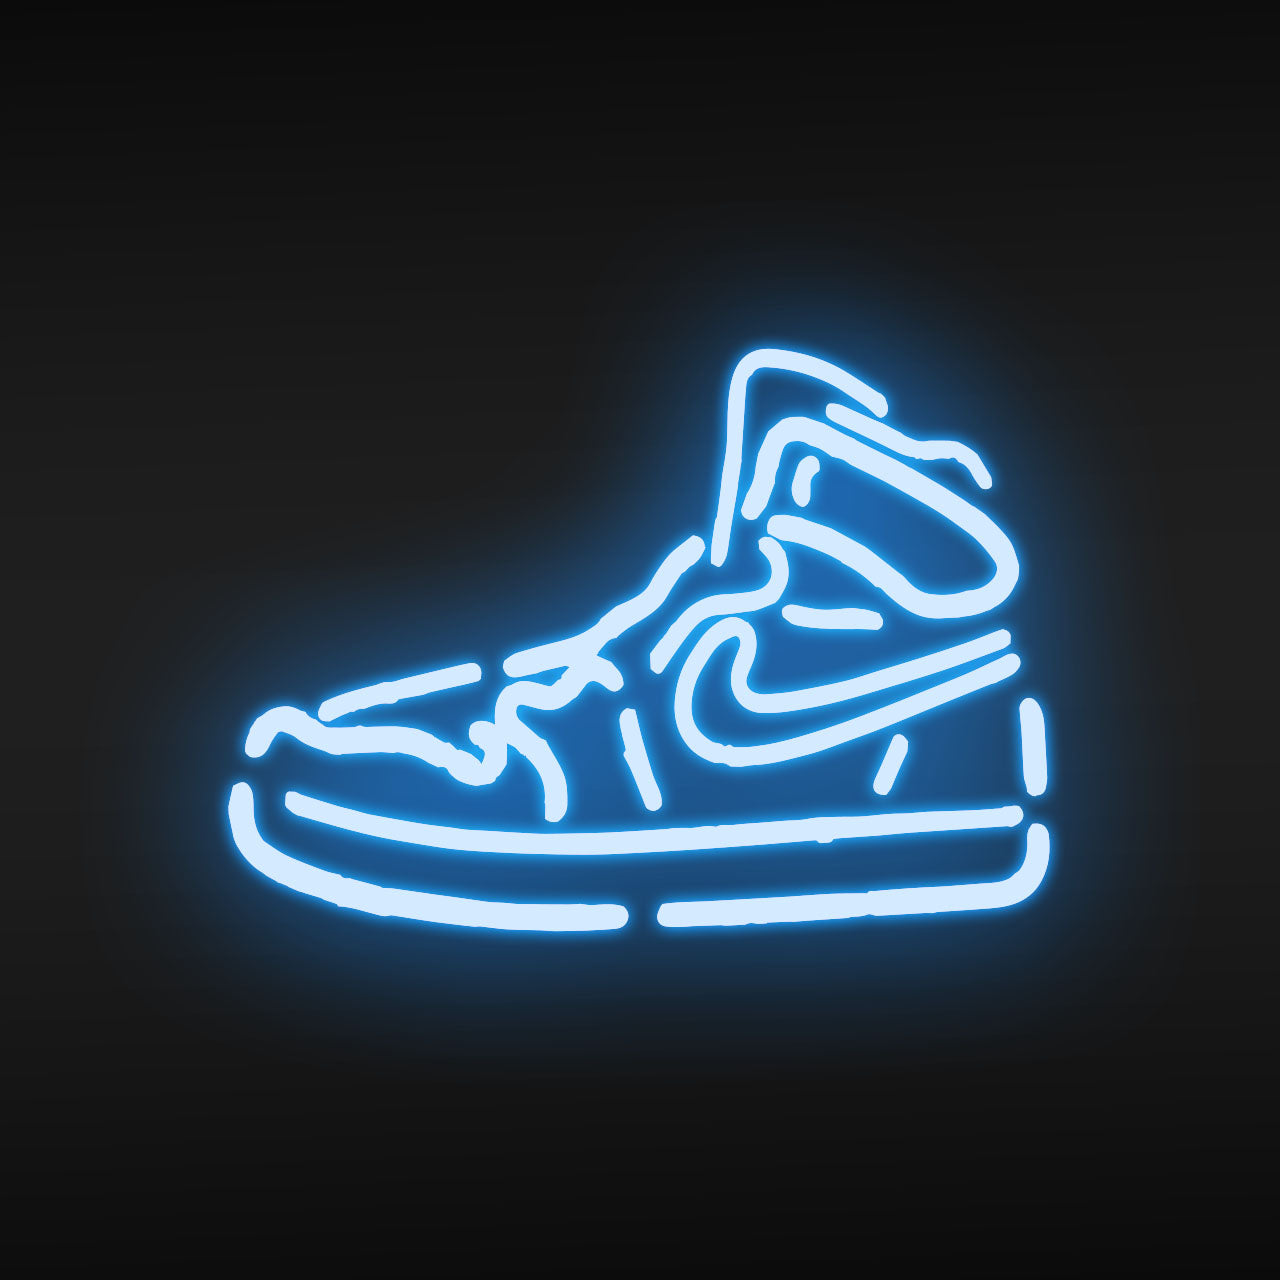 Nike Air Jordan Sneaker LED Neon Sign 